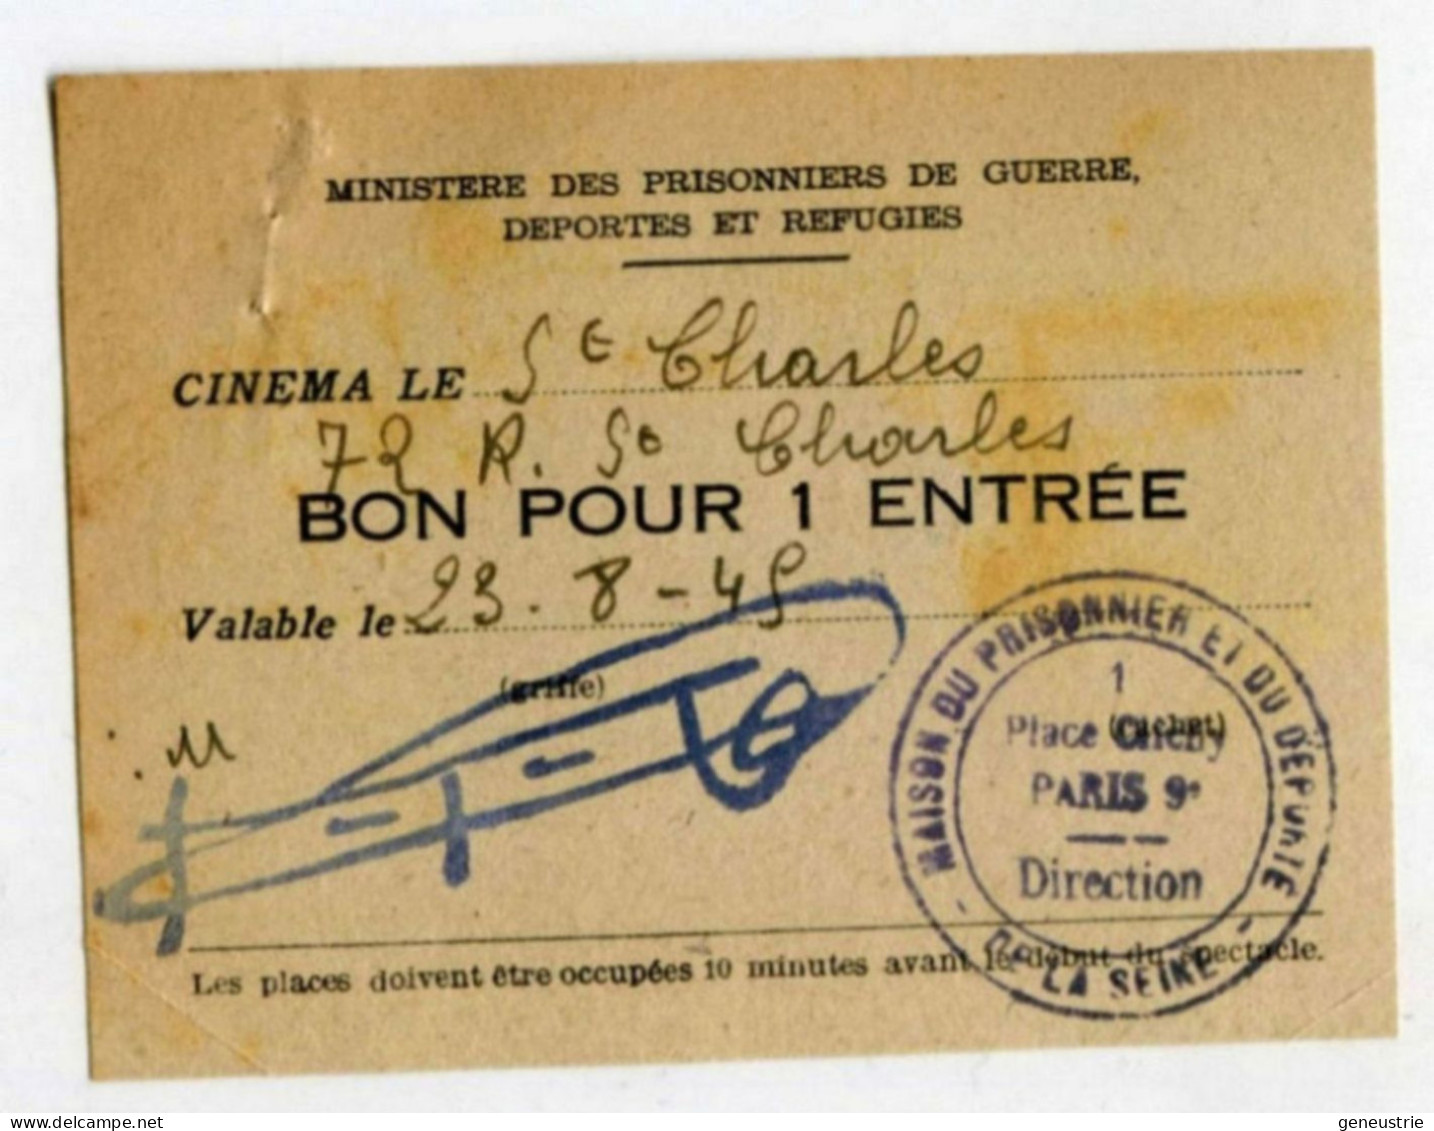 WW2 Bon De Nécessité "Bon Pour 1 Entrée" Ticket Cinéma St Charles - Maison Du Prisonnier Et Du Déporté - WWII - Monétaires / De Nécessité